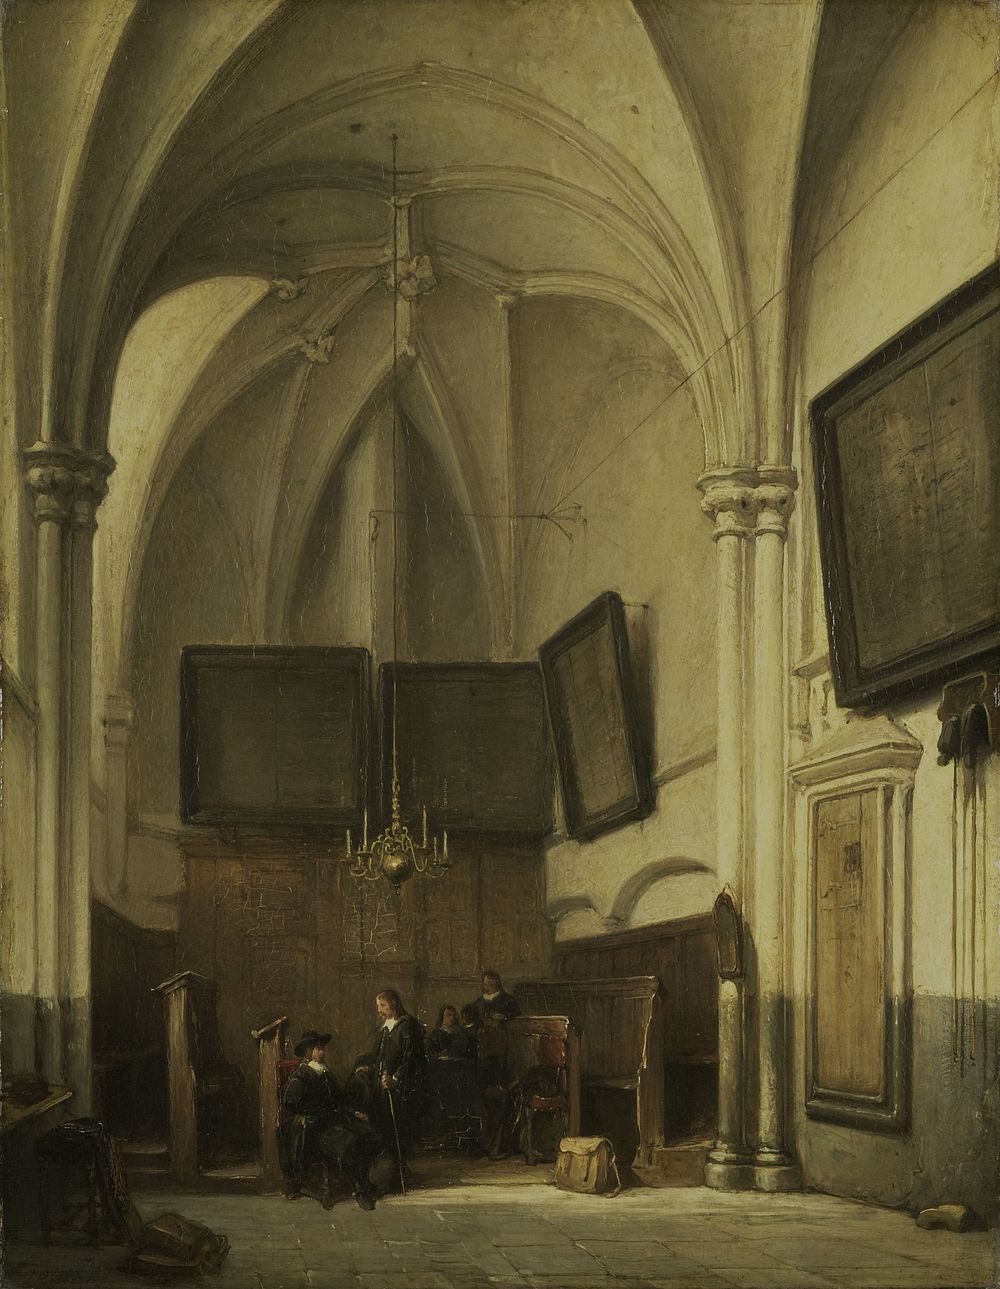 Vestry of the Church of St Stephen in Nijmegen (1850 - 1891) by Johannes Bosboom